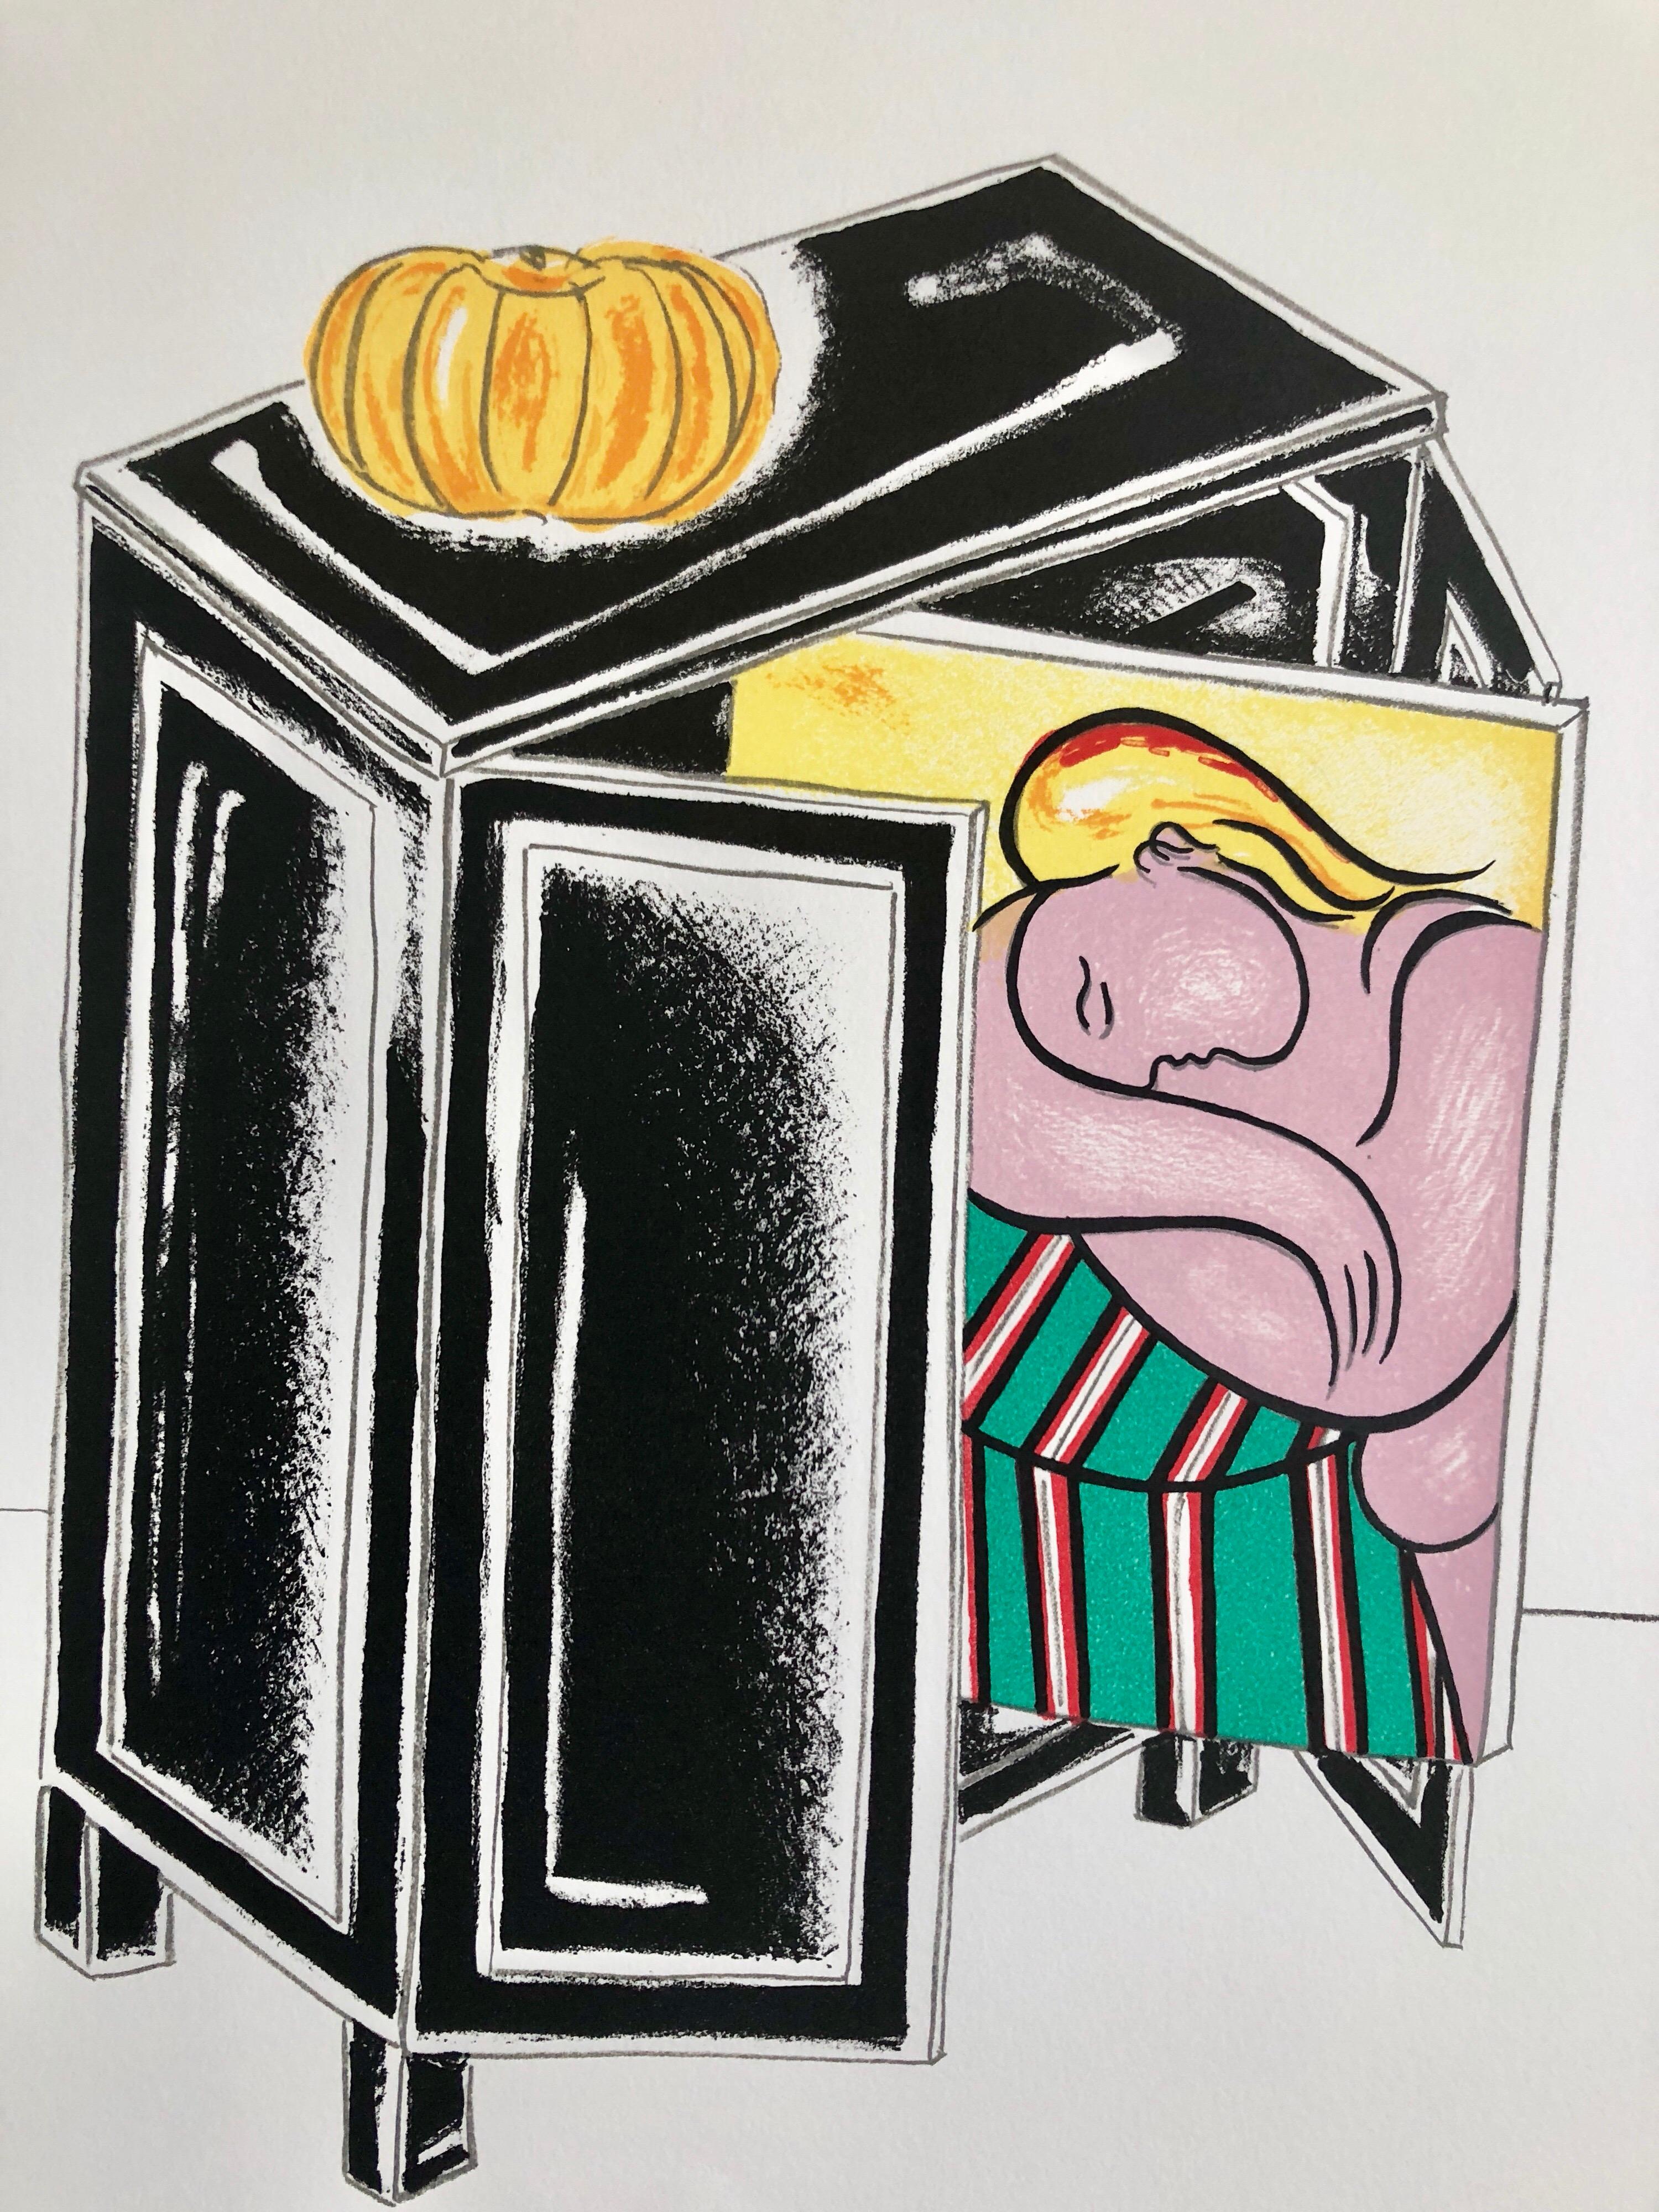 Triptyque post-historique Picasso, sérigraphie d'art conceptuel, lithographie en or  - Print de Braco Dimitrijevich